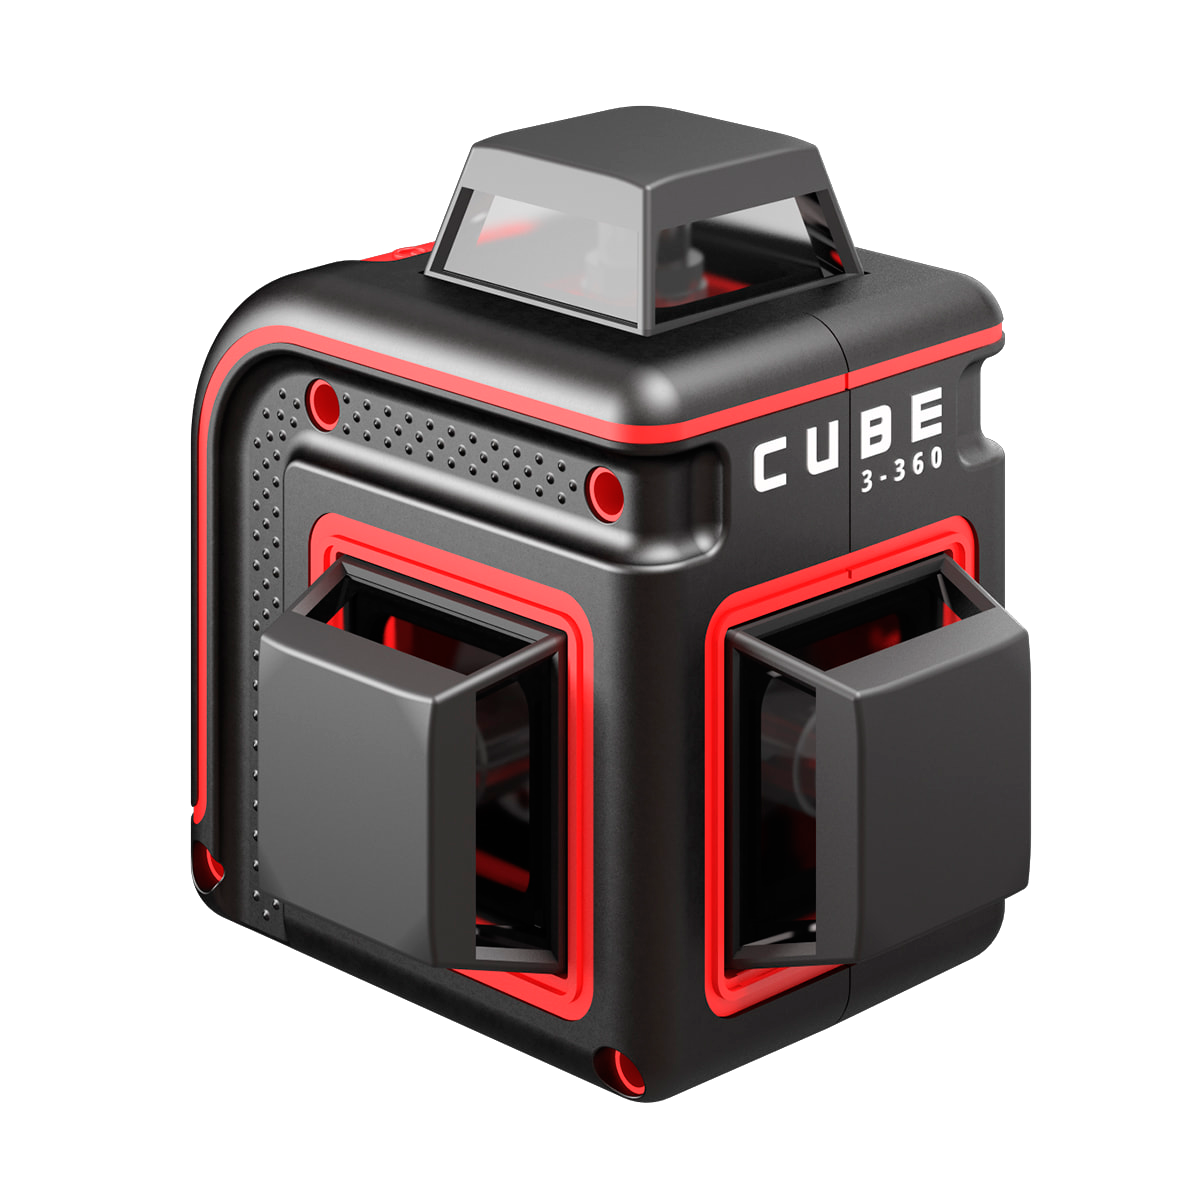 Лазерный уровень ada Cube 3-360 Home Edition а00565. Нивелир лазерный ada Cube 360 professional Edition. Лазерный уровень ada Cube 360 Basic Edition. Лазерный уровень ada Cube 3-360 Green Basic Edition.